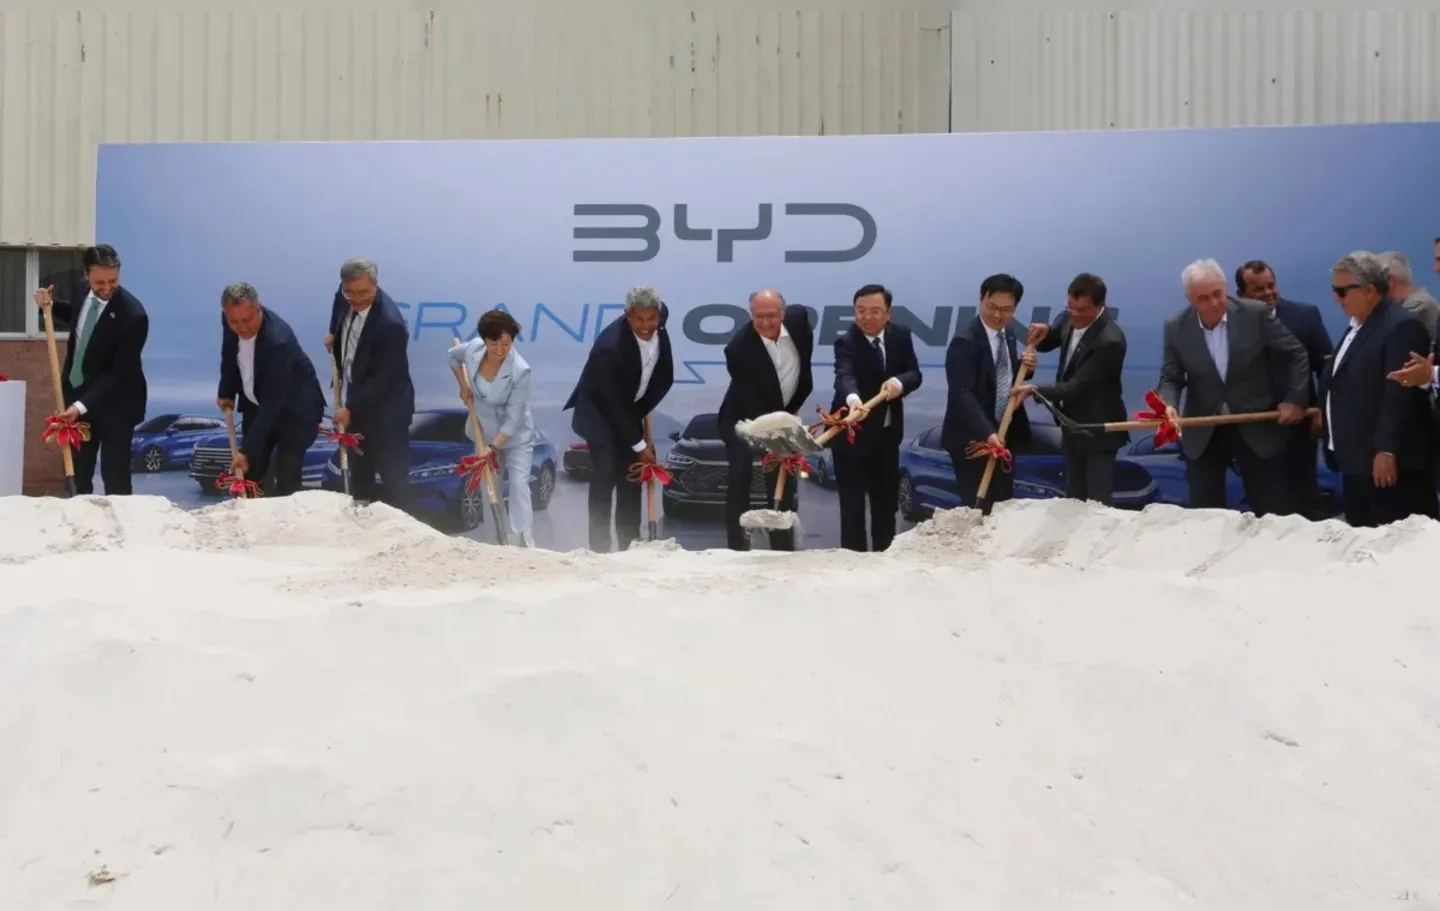 Autoridades encenam simbolicamente o início da construção da fábrica da BYD